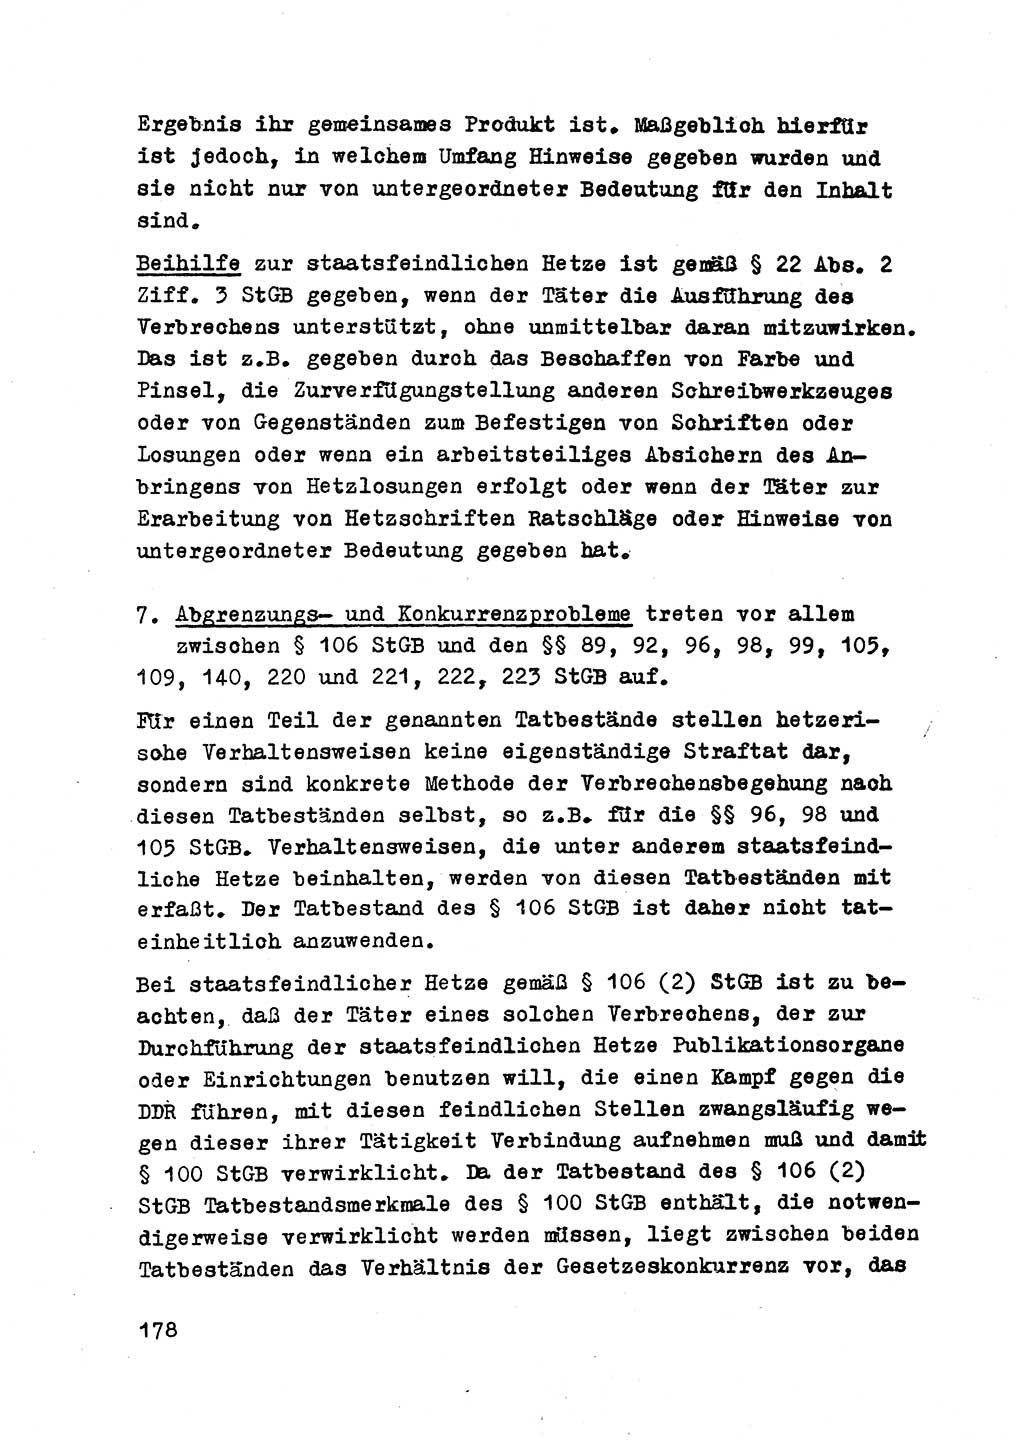 Strafrecht der DDR (Deutsche Demokratische Republik), Besonderer Teil, Lehrmaterial, Heft 2 1969, Seite 178 (Strafr. DDR BT Lehrmat. H. 2 1969, S. 178)